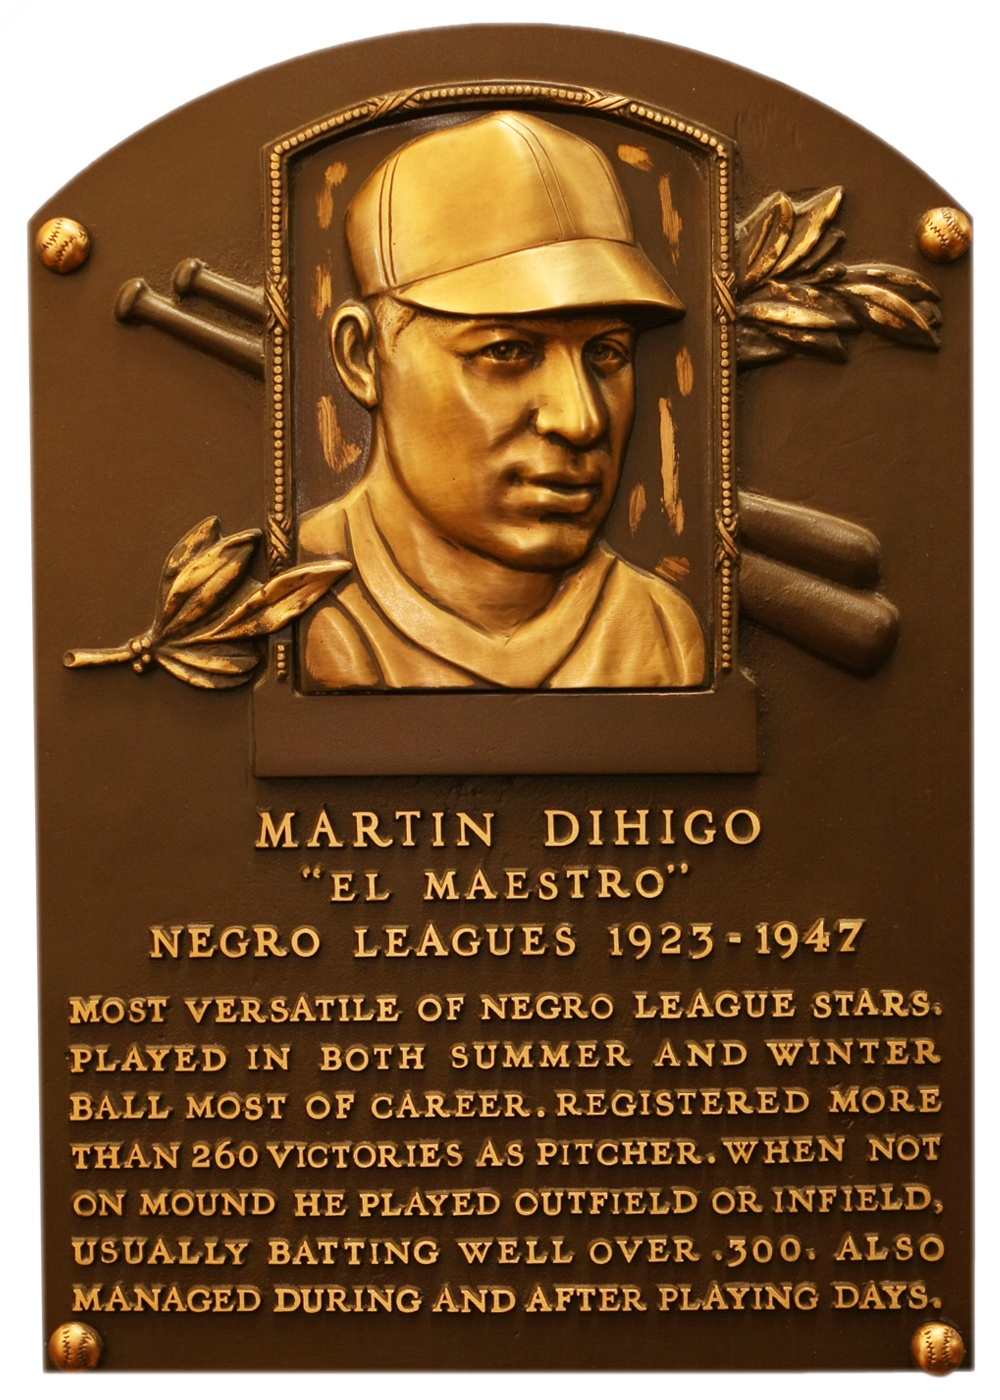 Martín Dihigo Hall of Fame plaque